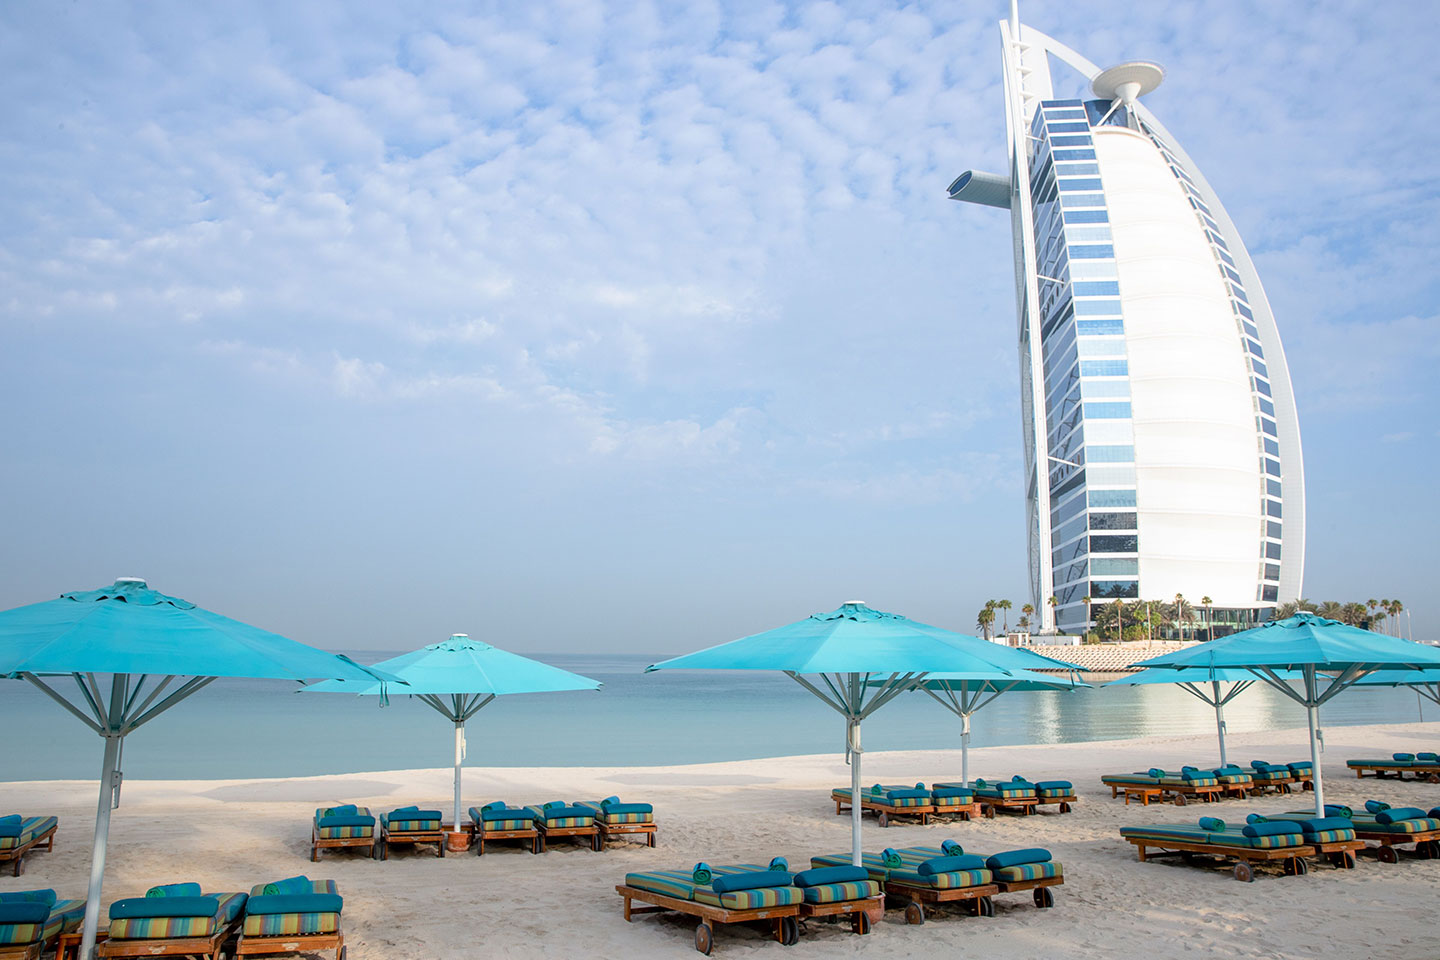 View of Burj al Arab from Jumeirah Beach